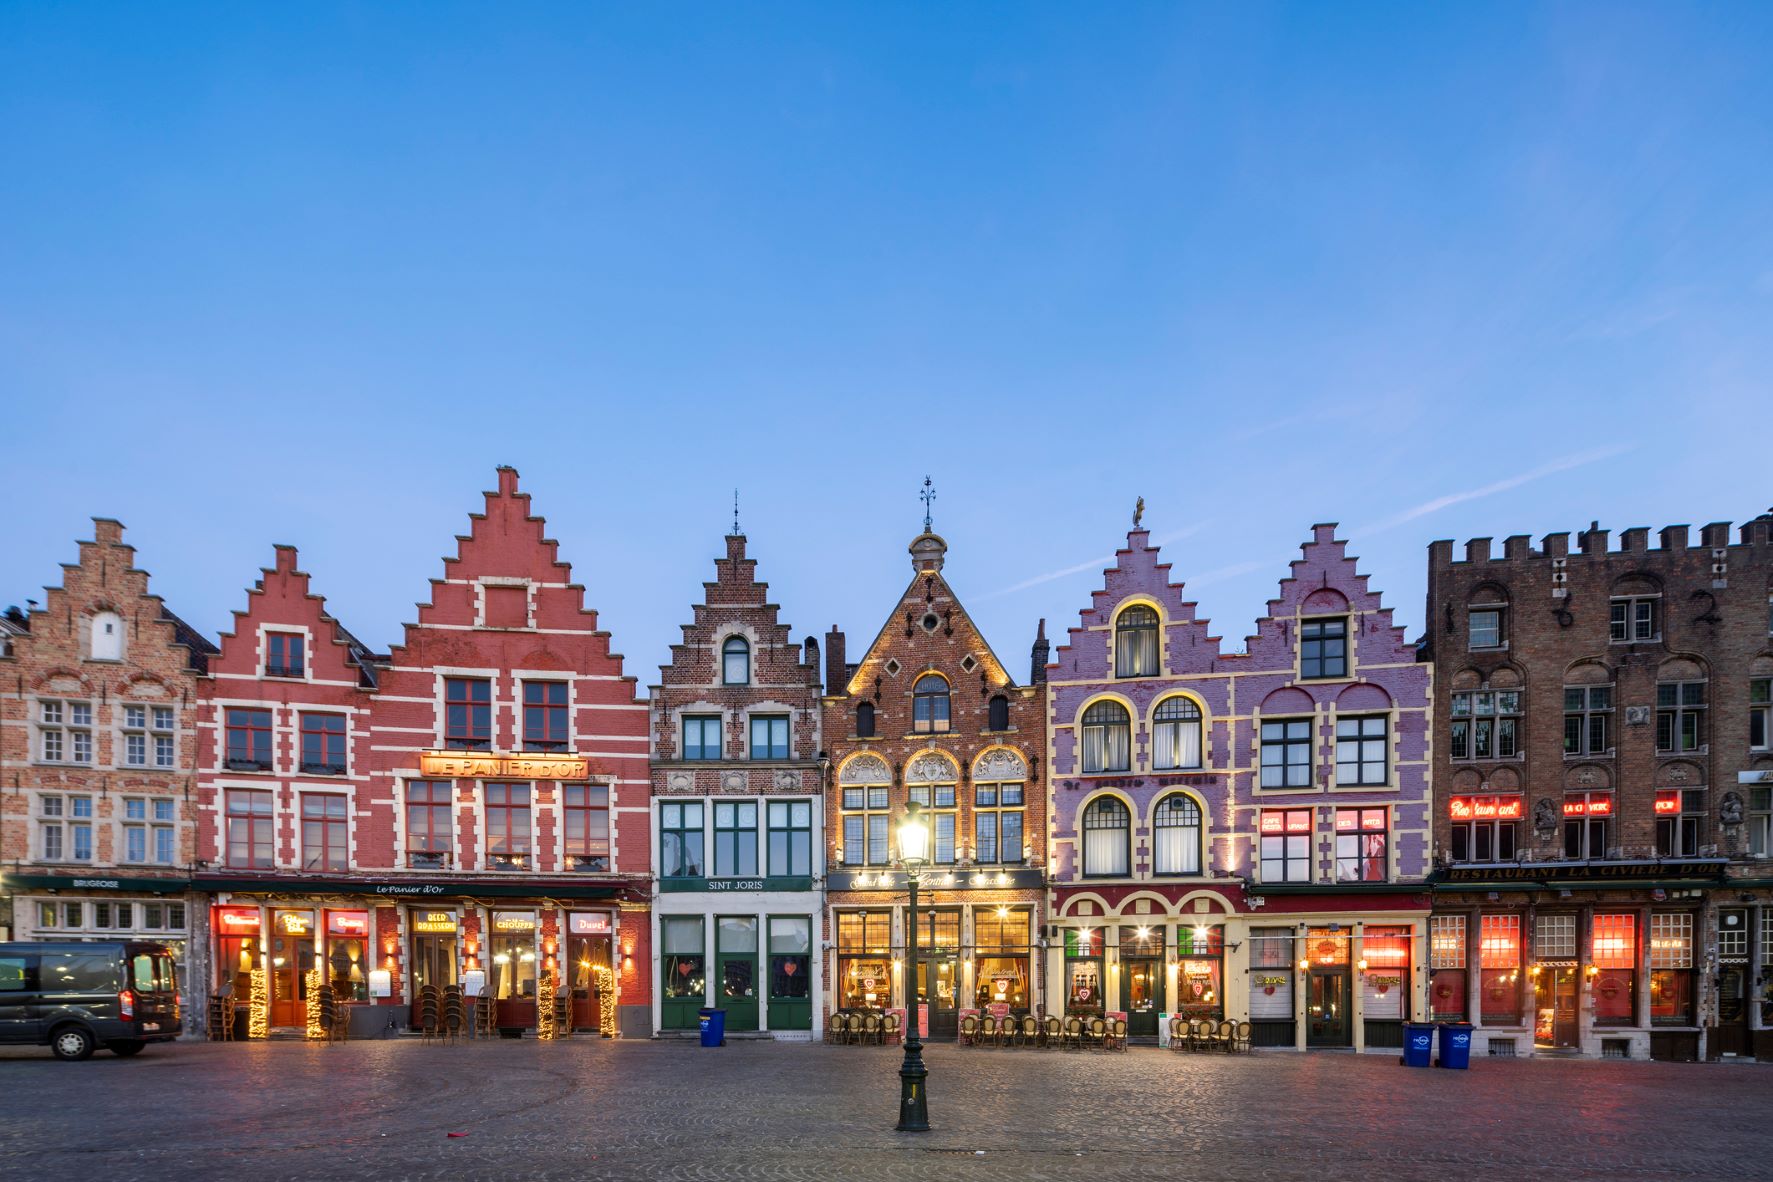 Bruges főtere, ahol a piac is található